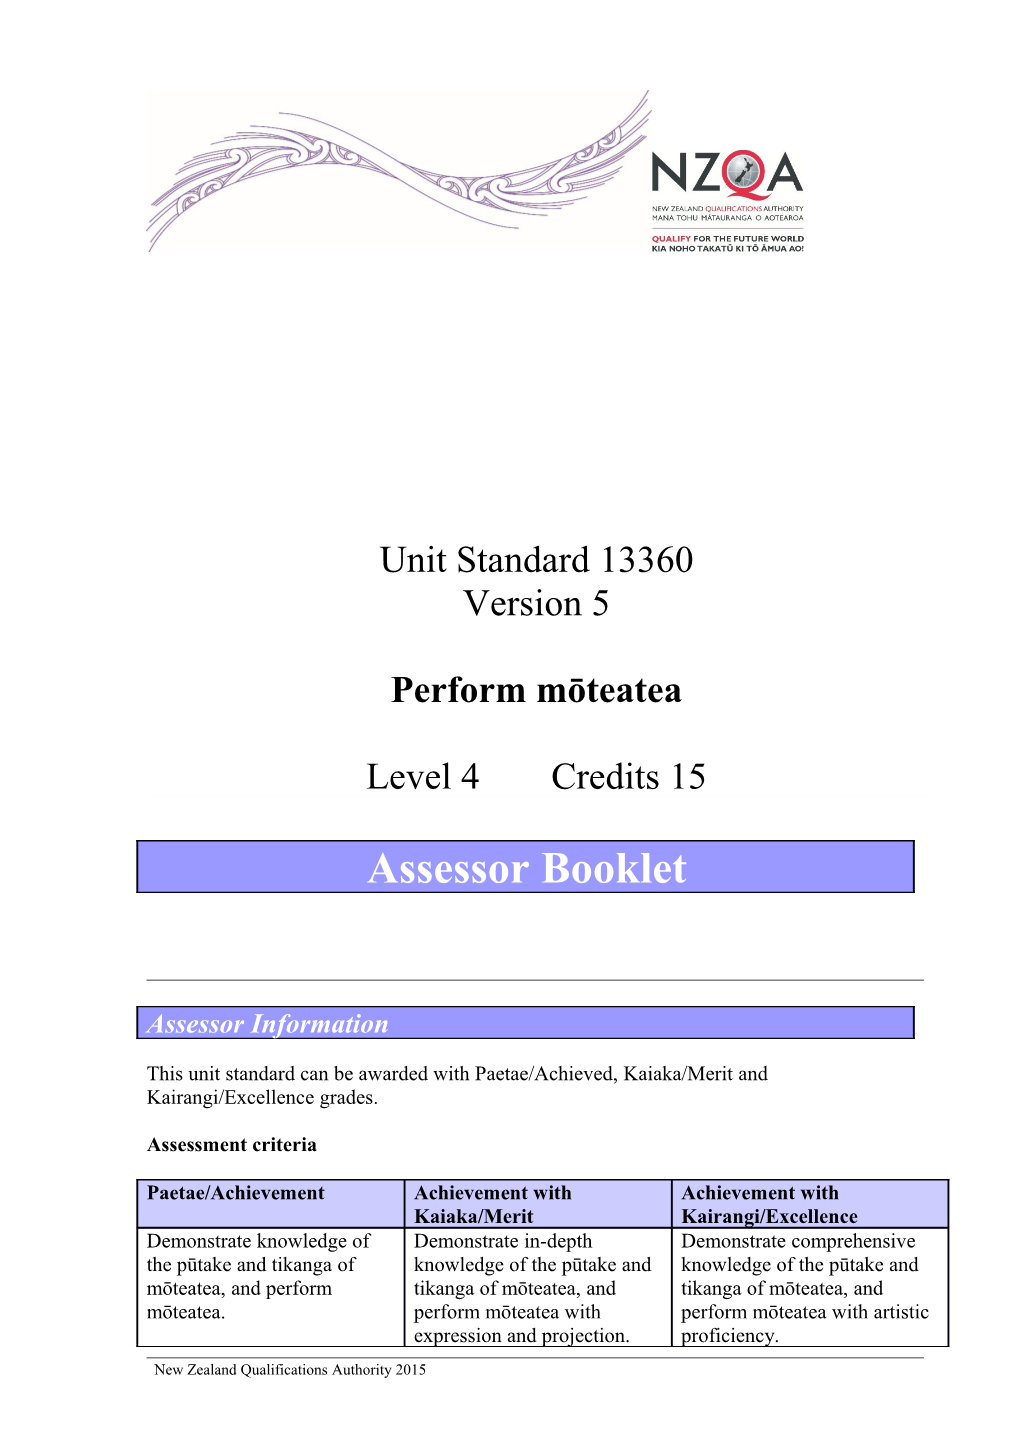 Unit Standard 13360 Version 5 Performmōteatea